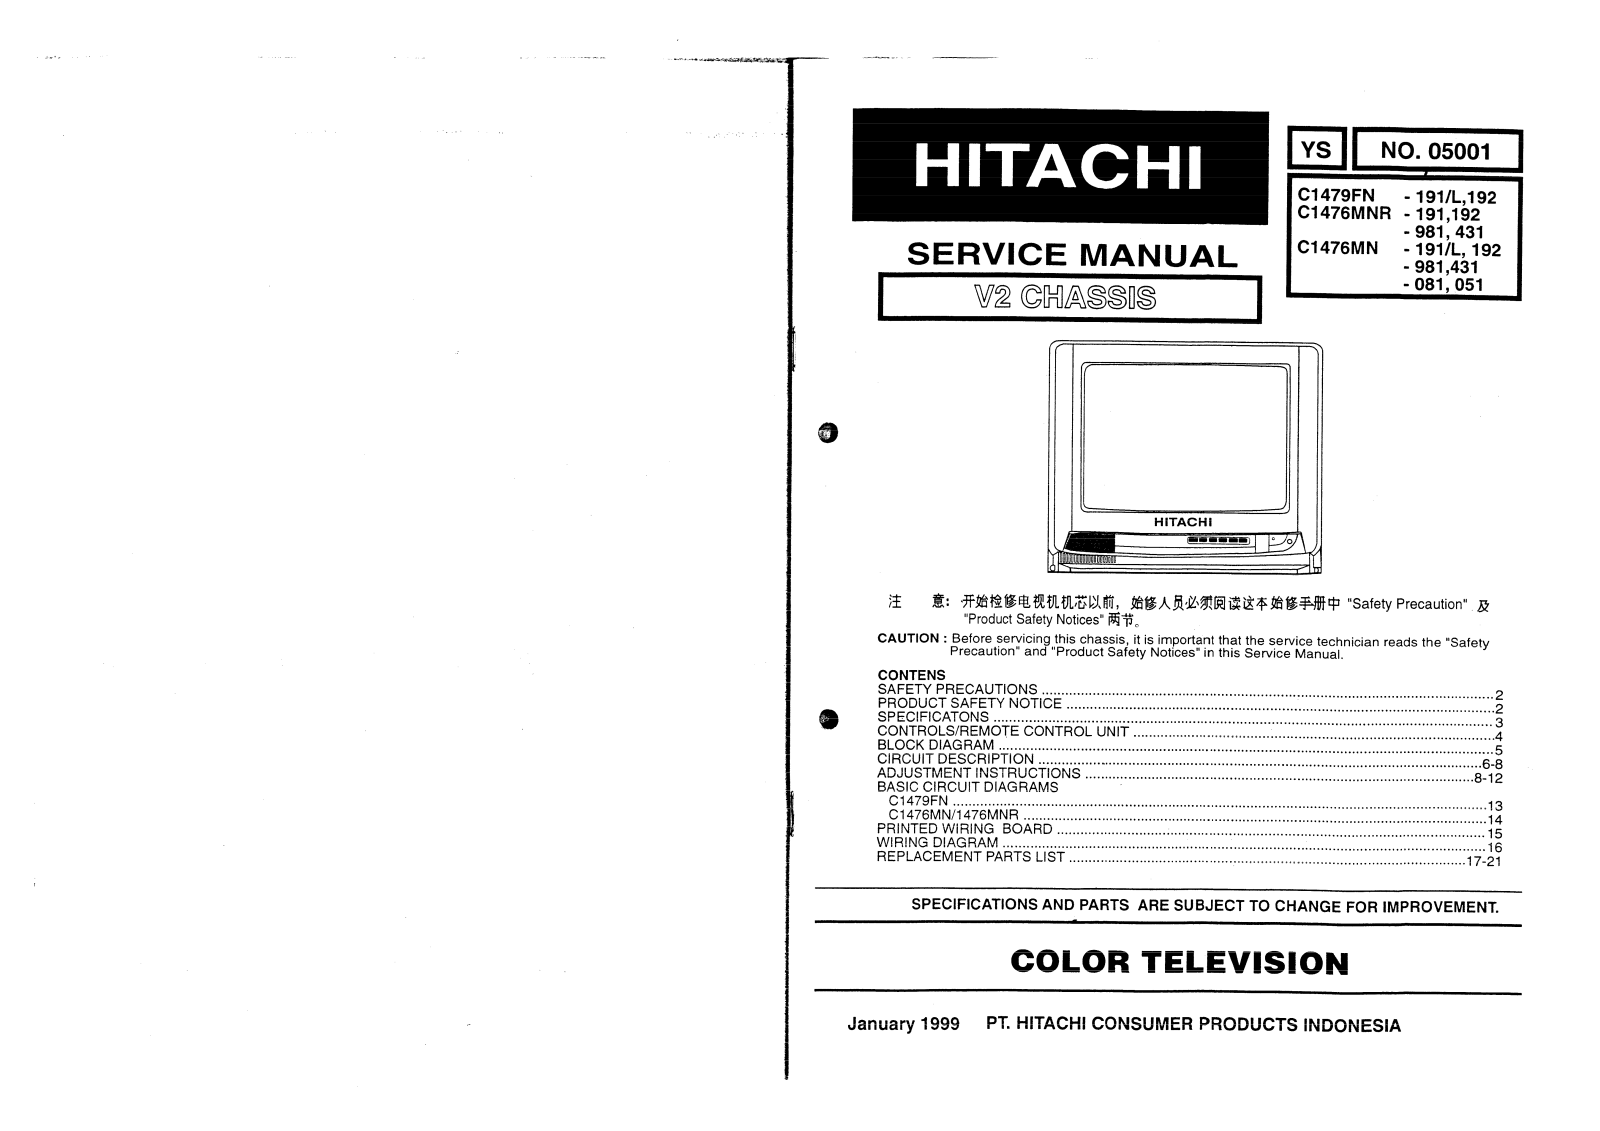 Hitachi C1479, C1476MNR, C1476MN Schematic